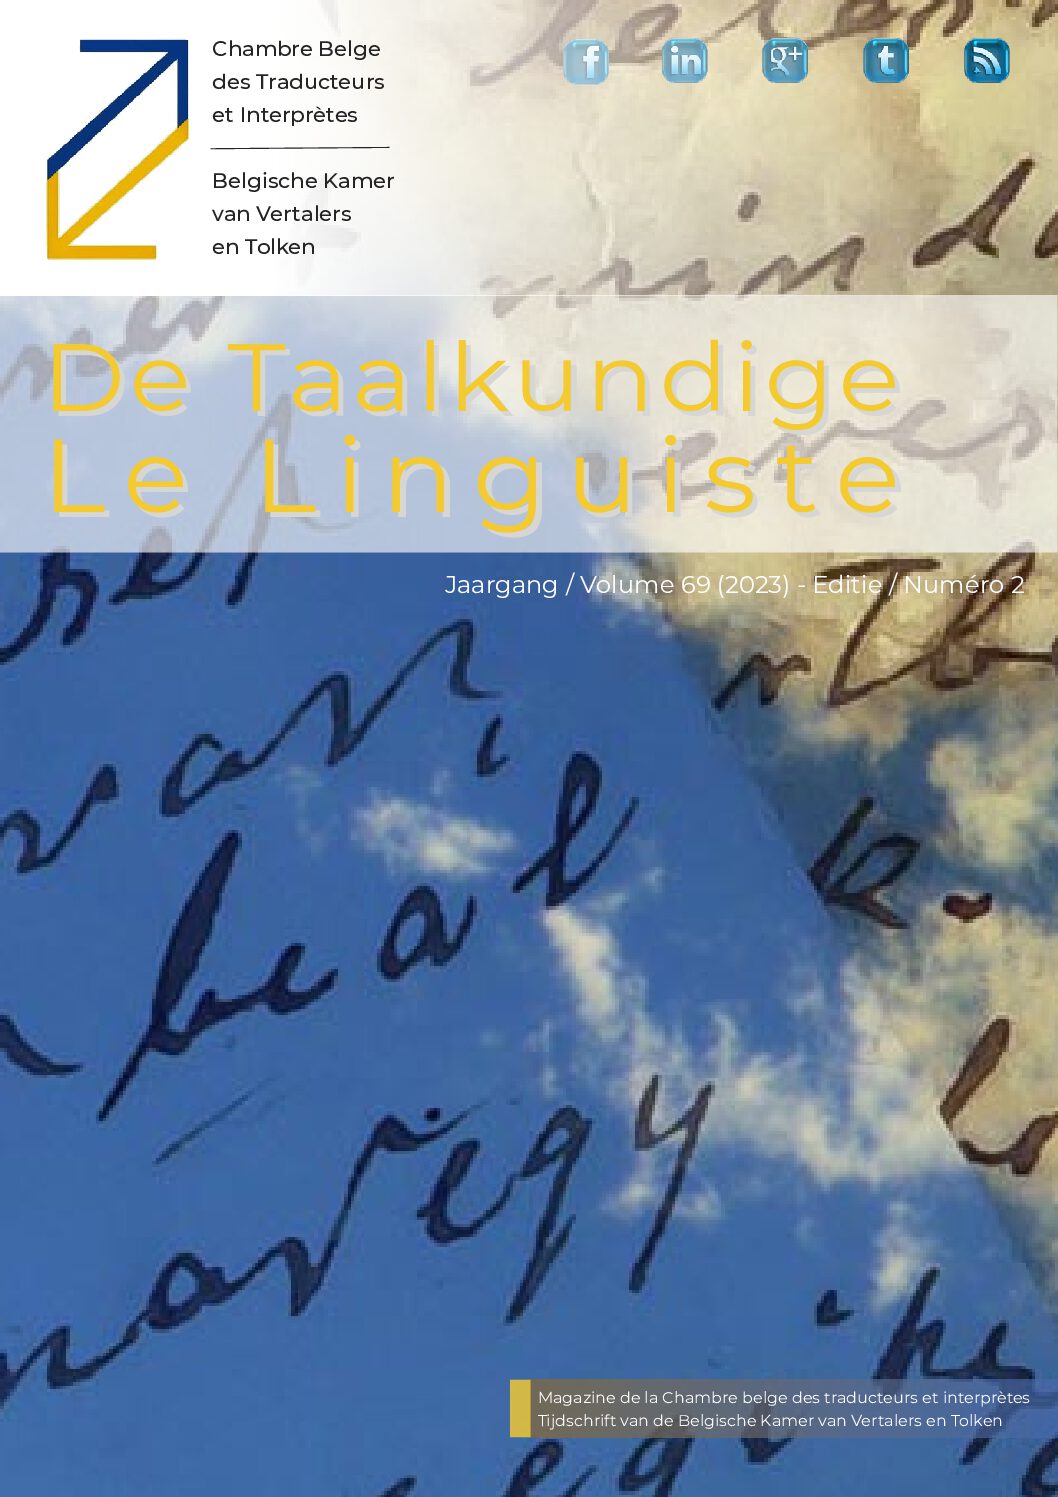 Image de présentation pour le document : De Taalkundige – Le Linguiste 2023-2